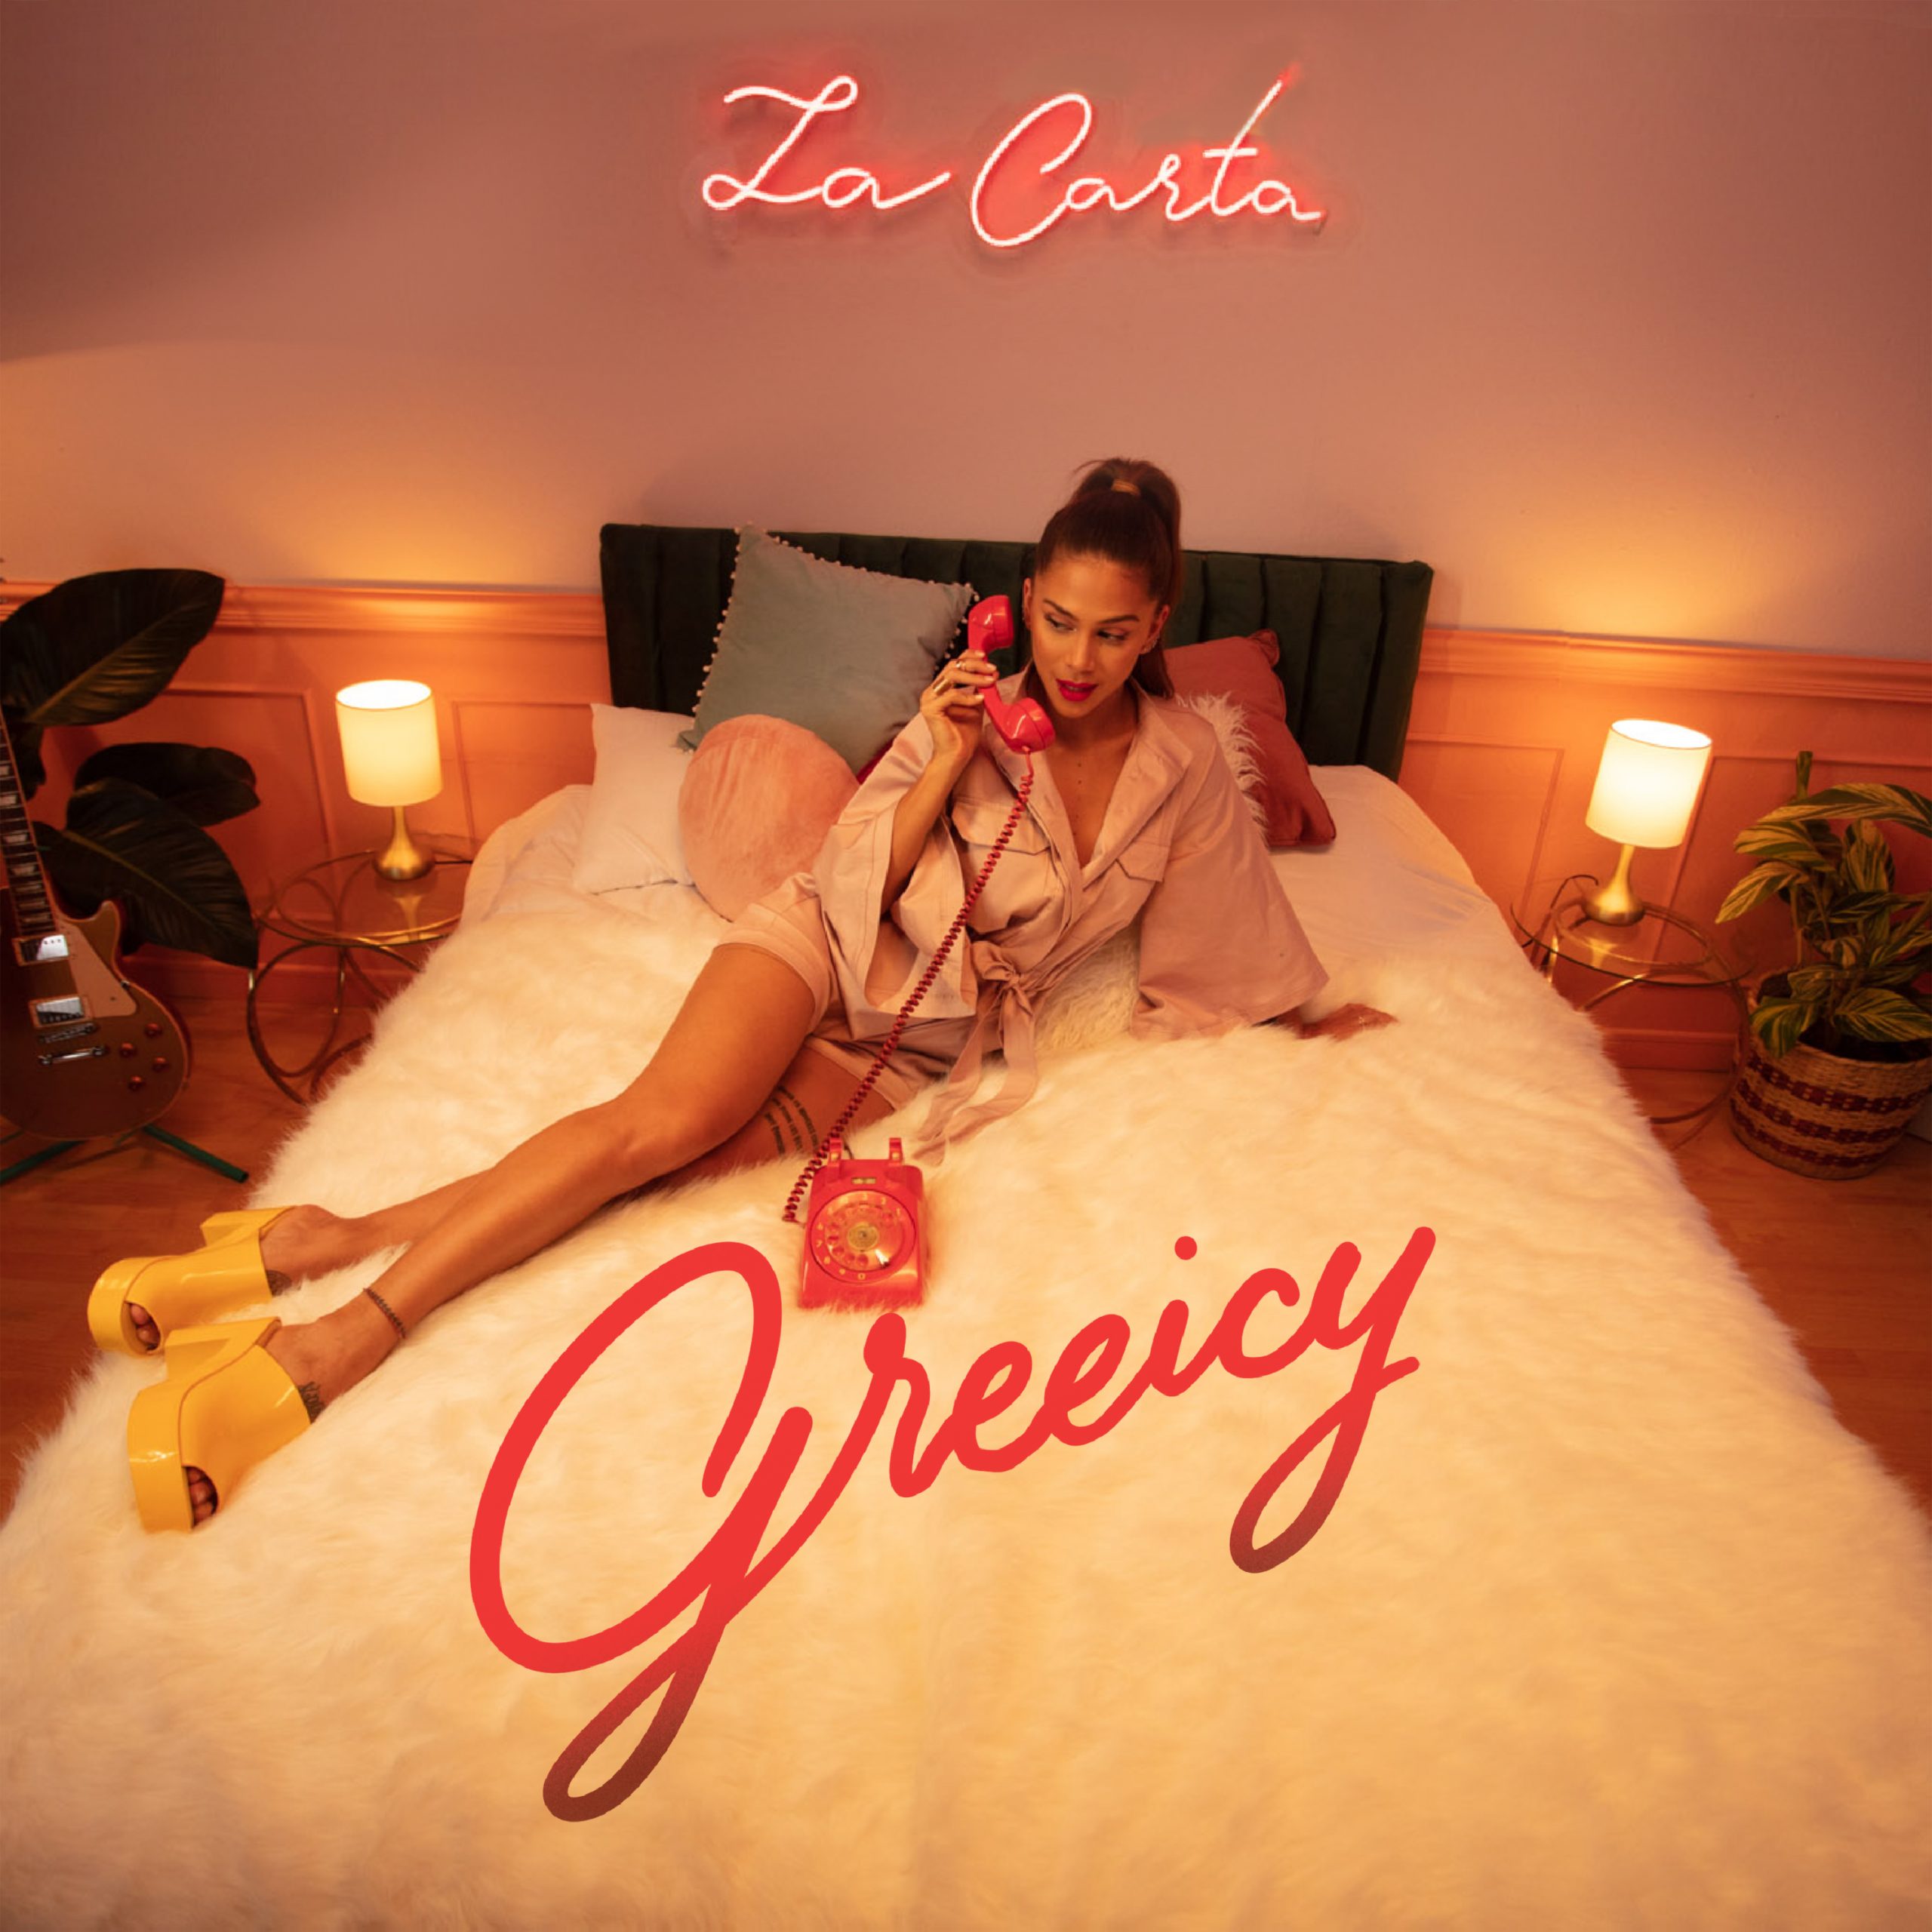 Greeicy lanza su nuevo álbum titulado ‘La carta’